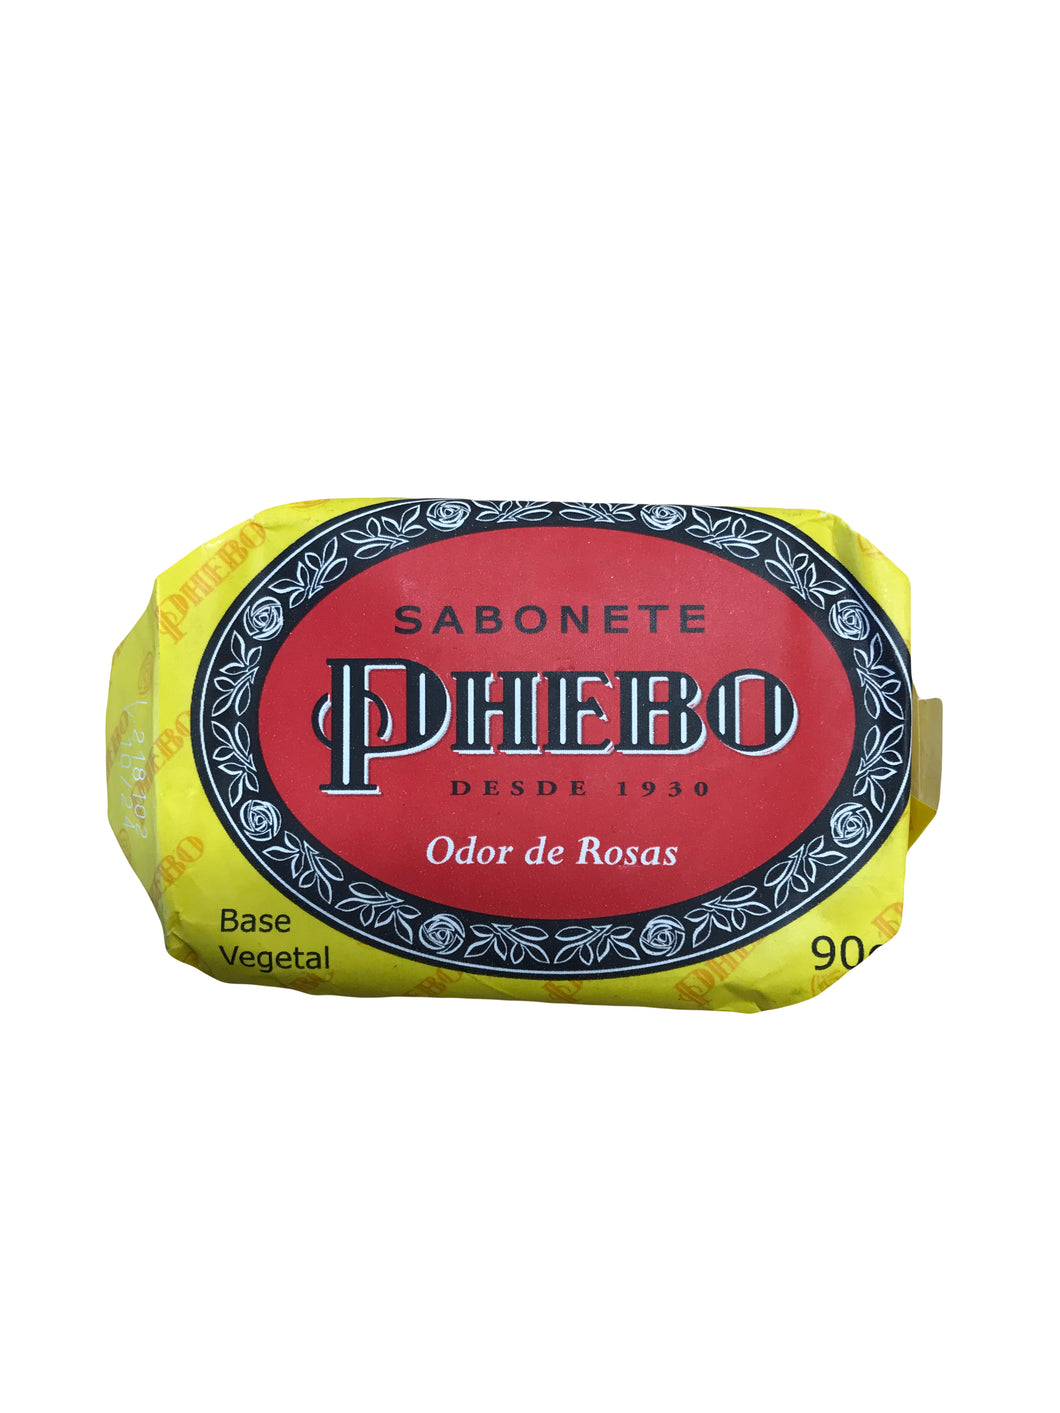 Phebo Jabon Odor de Rosas - Phebo Soap 90g